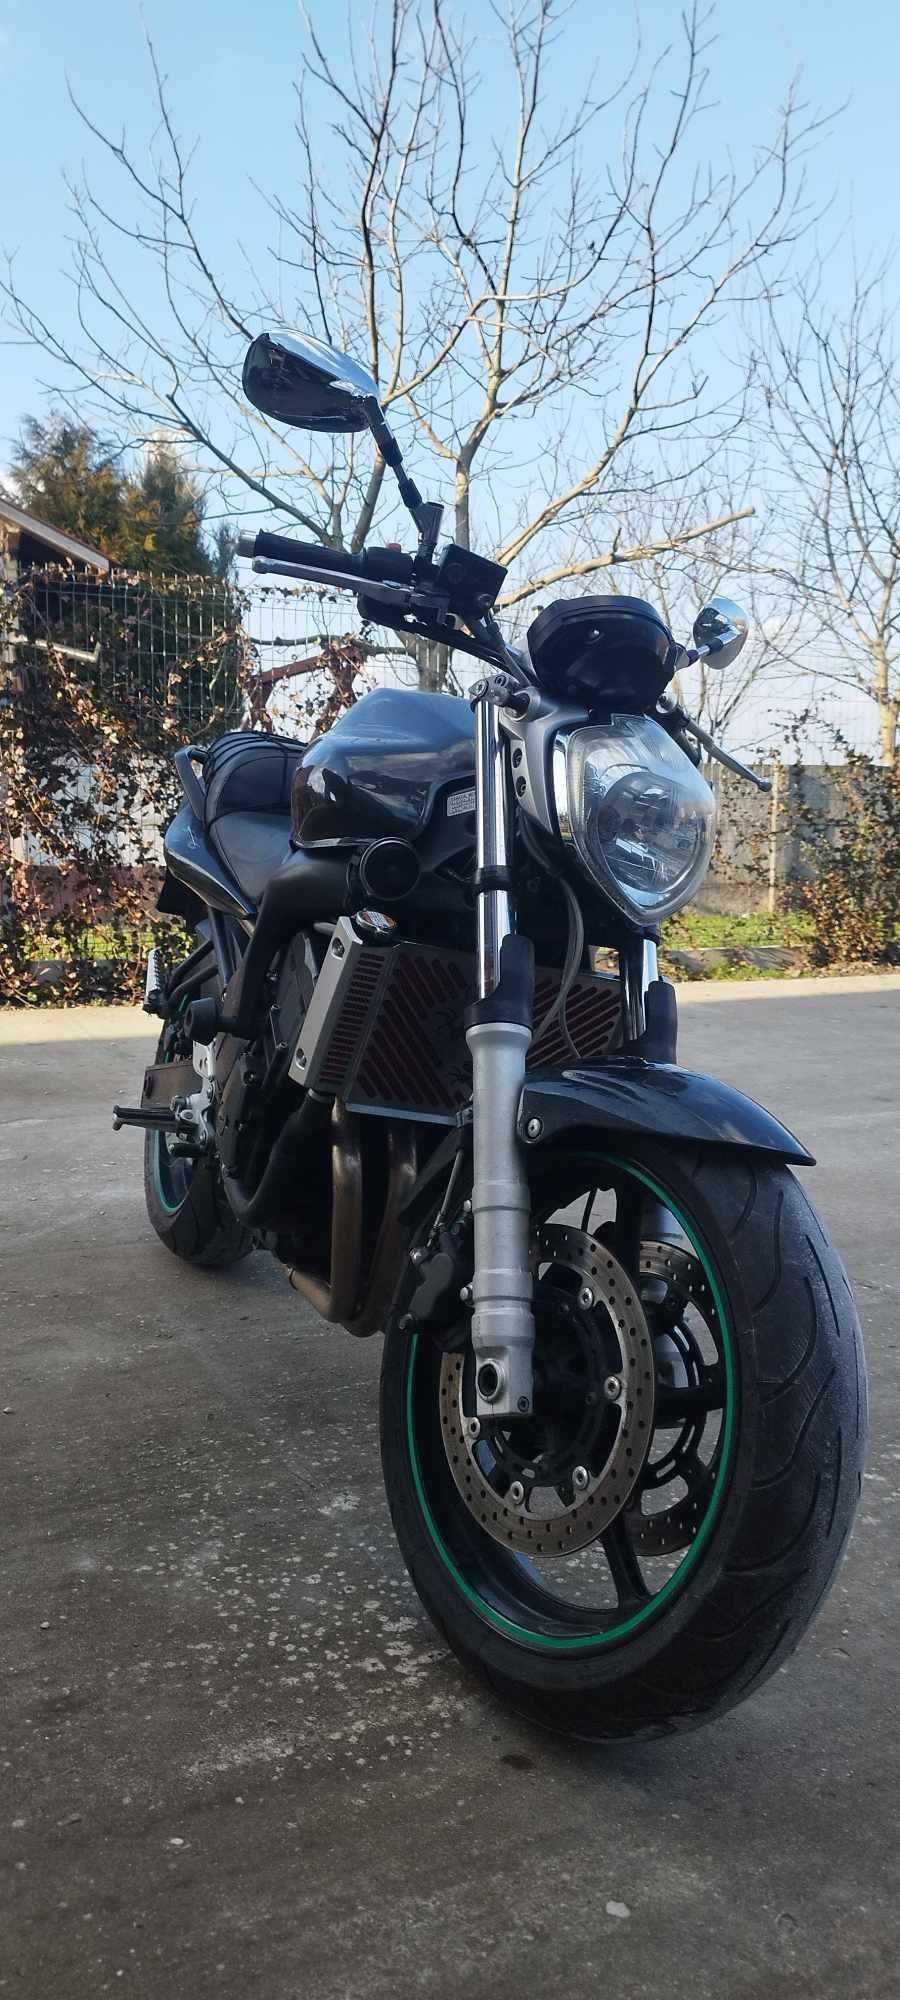 Yamaha fz6 naked black